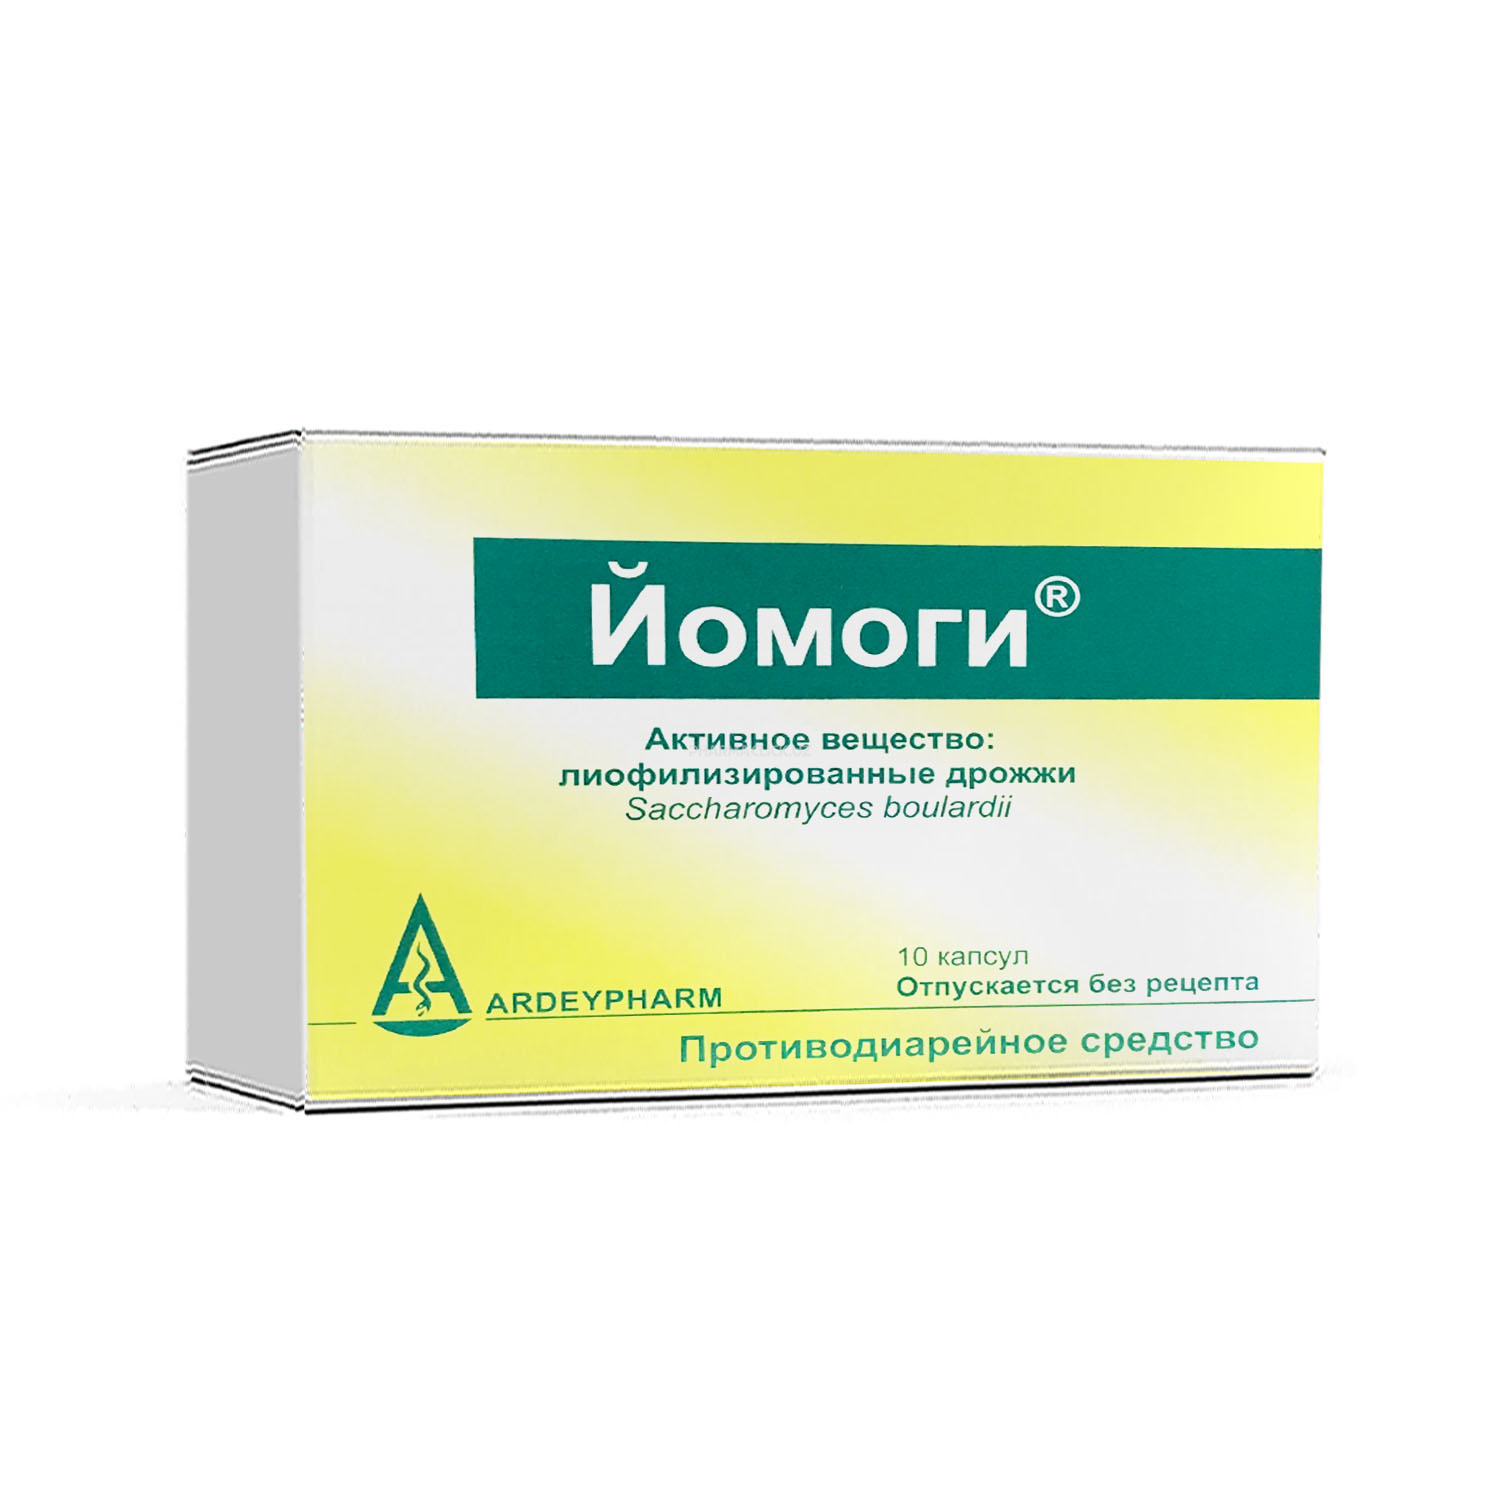 Yomogi kaps 250 mg № 10